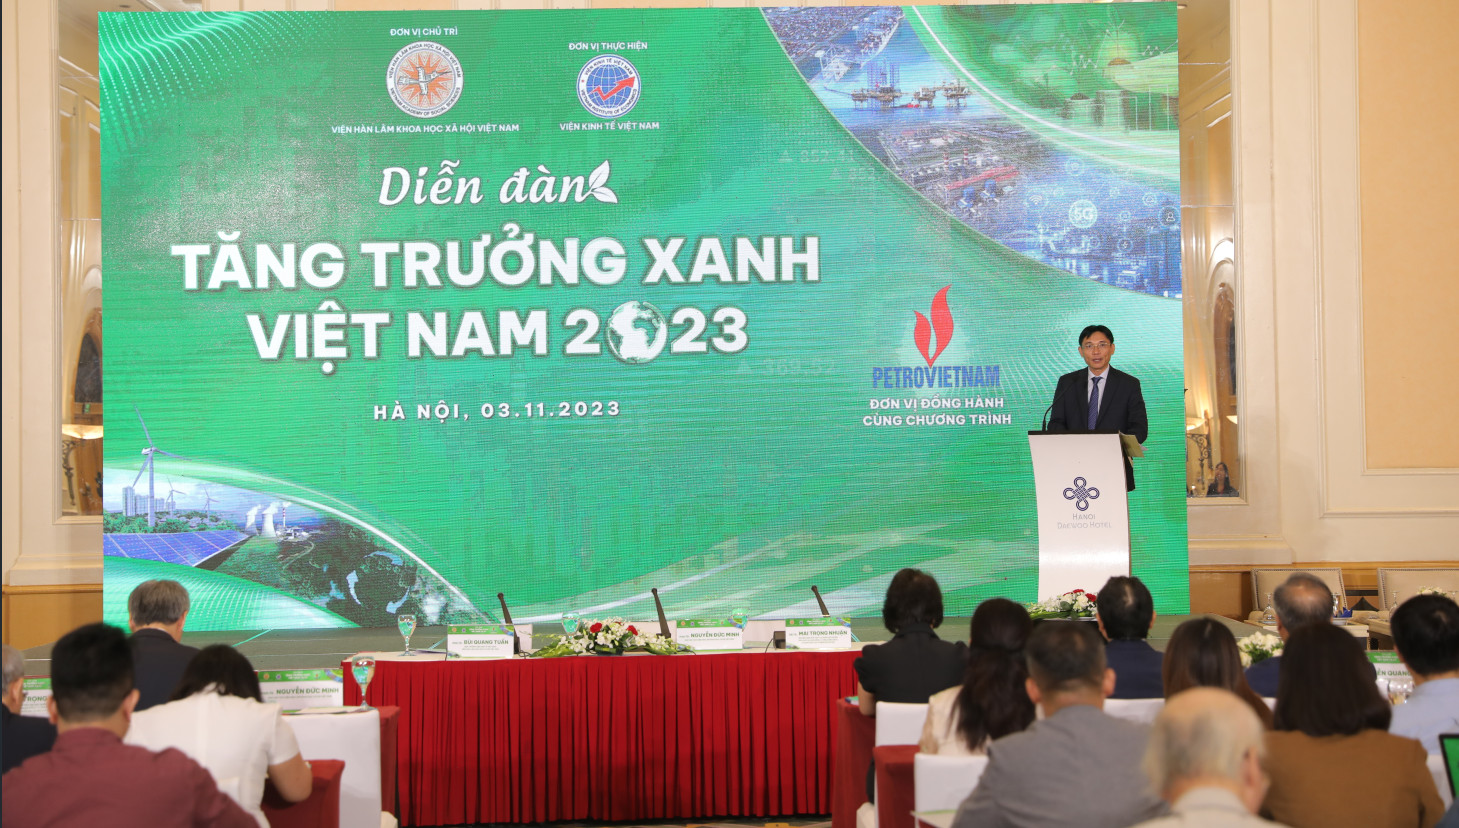 PGS.TS Nguyễn Đức Minh – Phó Chủ tịch Viện Hàn lâm KHXH Việt Nam phát biểu khai mạc chương trình.